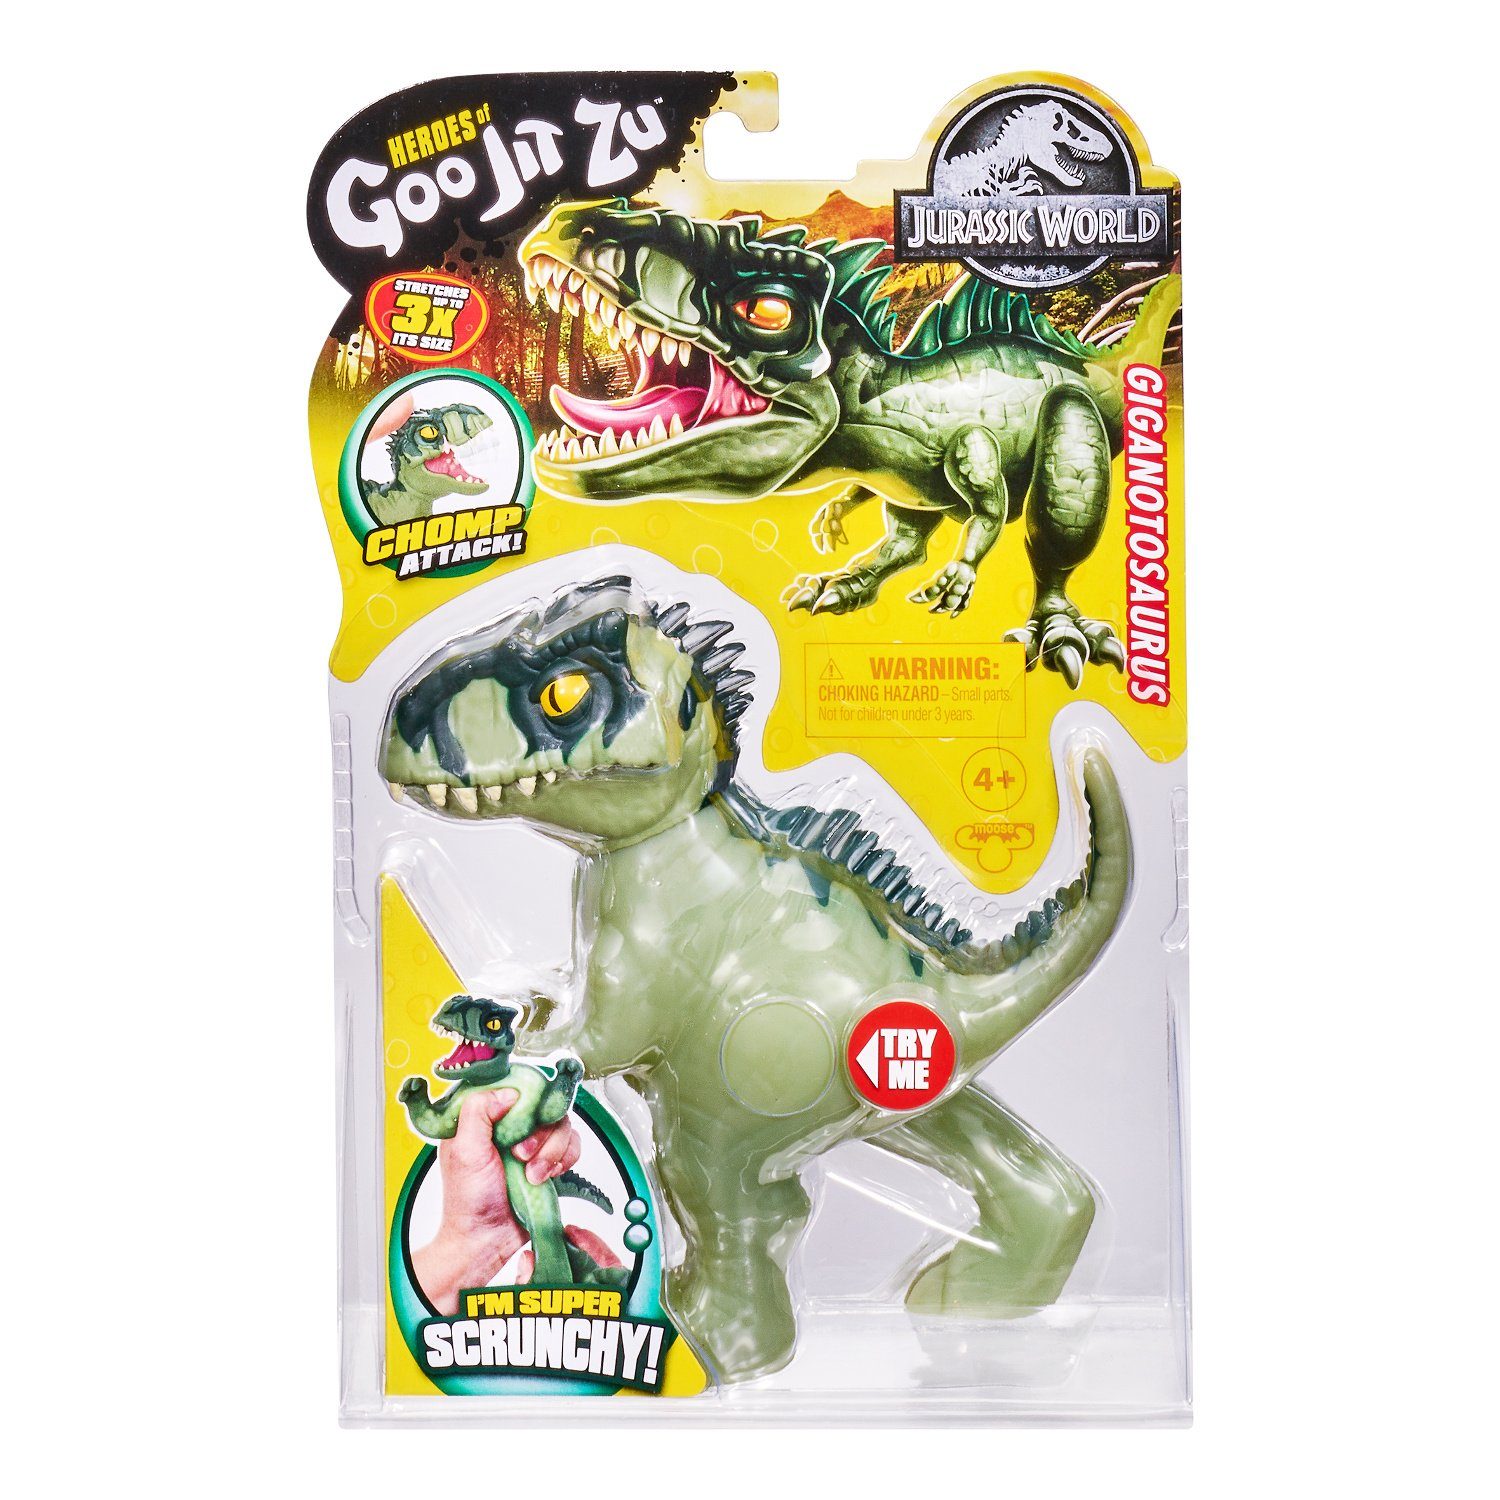 Jit Giga Goo Moose World Spielfigur Dinozaurier Jurassic Zu GOJ41306,